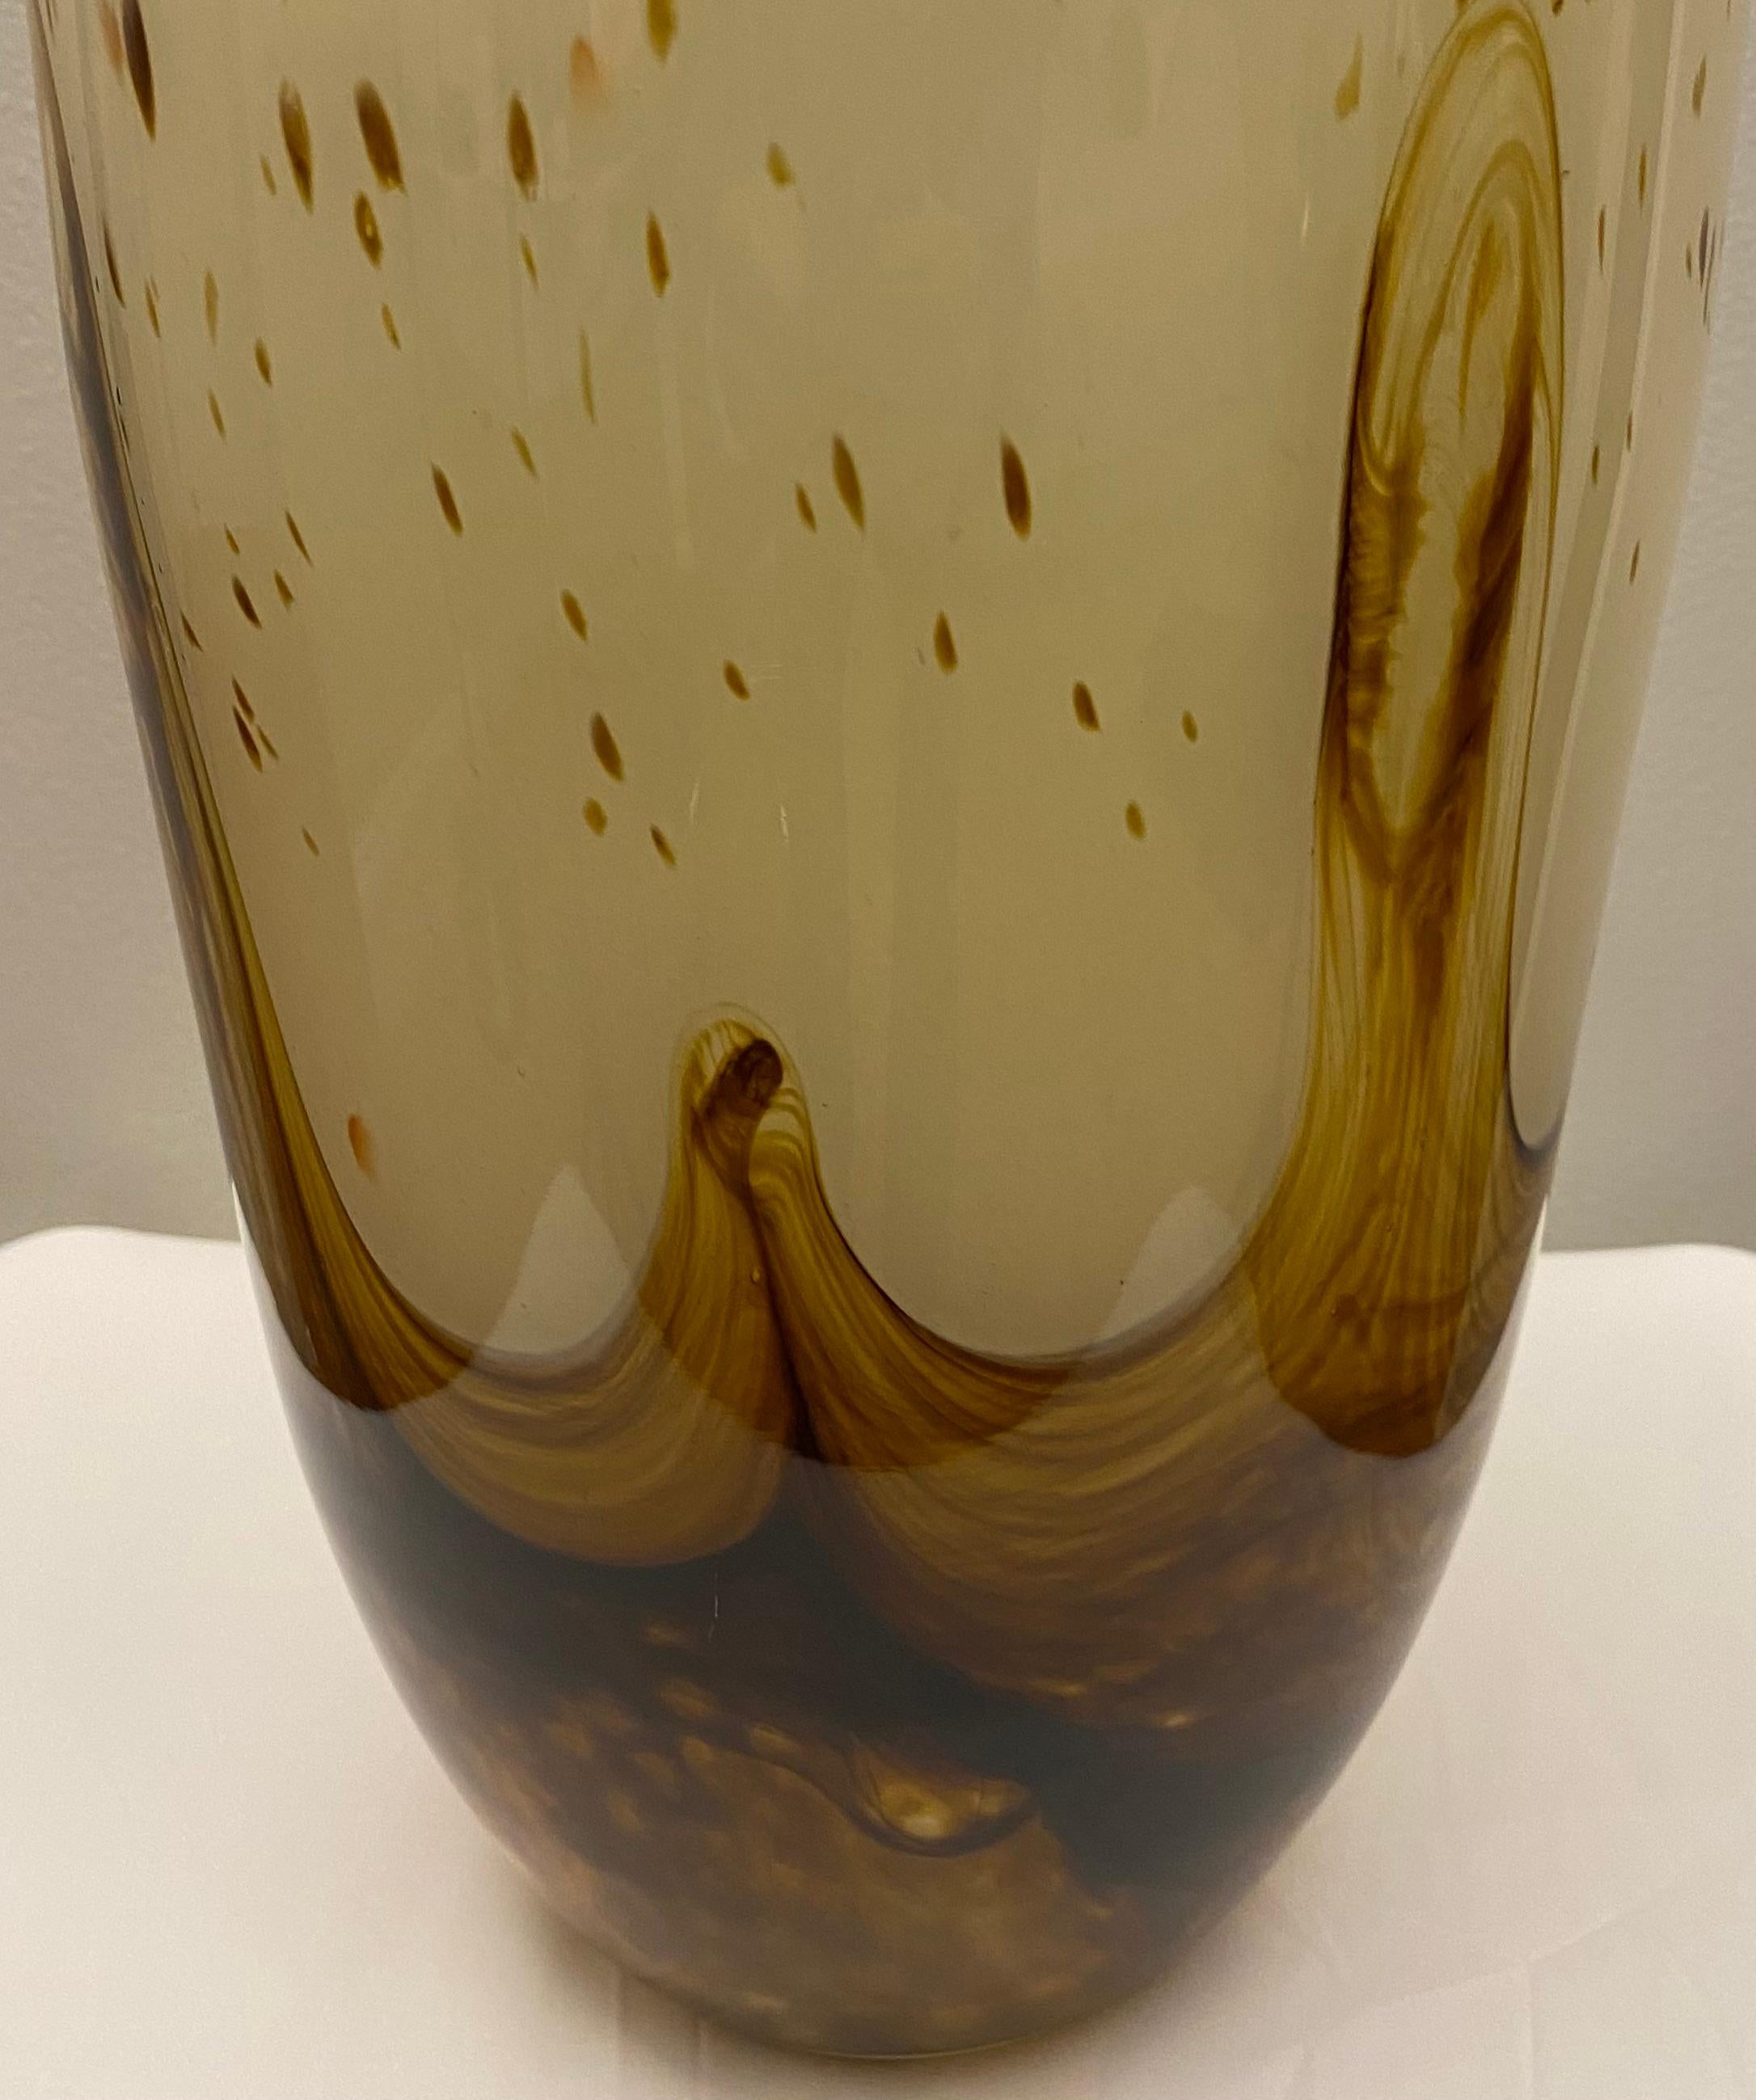 Un vase en verre d'art moderne aux superbes tons de beige et d'ambre. 

Ce vase en verre soufflé de Murano a une forme étonnante et des couleurs neutres accrocheuses. Parfait dans n'importe quel cadre.
 
Attribué à Fratelli Toso, milieu du 20e